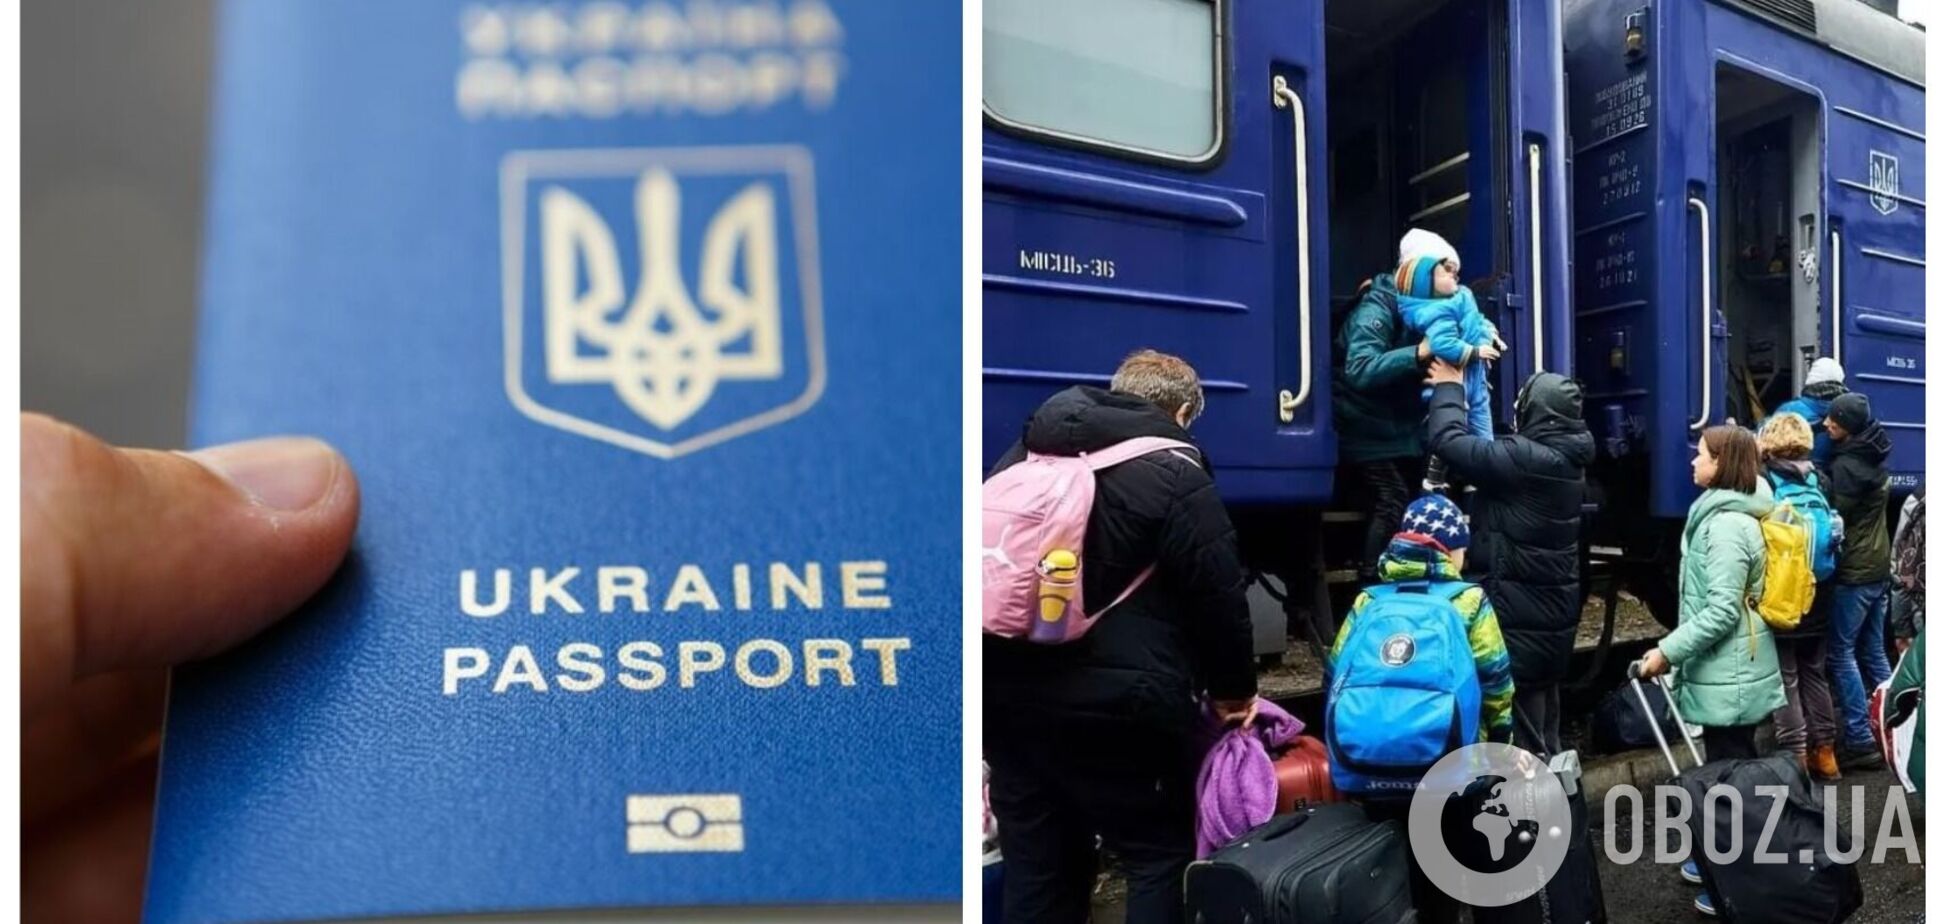 Украинцам для пересечения границы со странами ЕС необходимо иметь загранпаспорт, но есть исключения, – УЗ